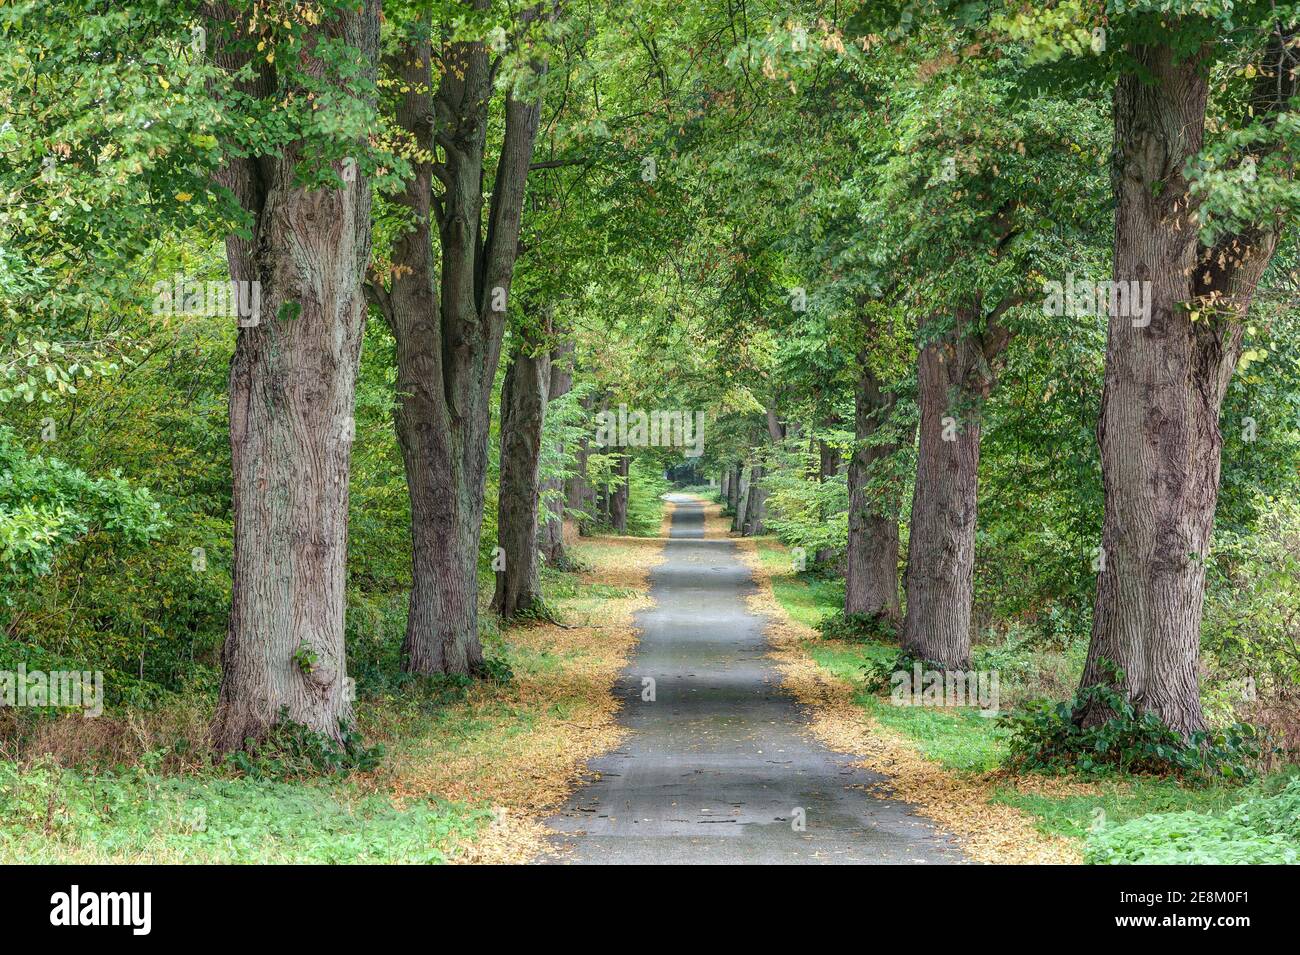 En otoño, el pequeño camino que conduce a través de la magnífica avenida arbolada está enmarcado por las hojas amarillas de los árboles. Foto de stock